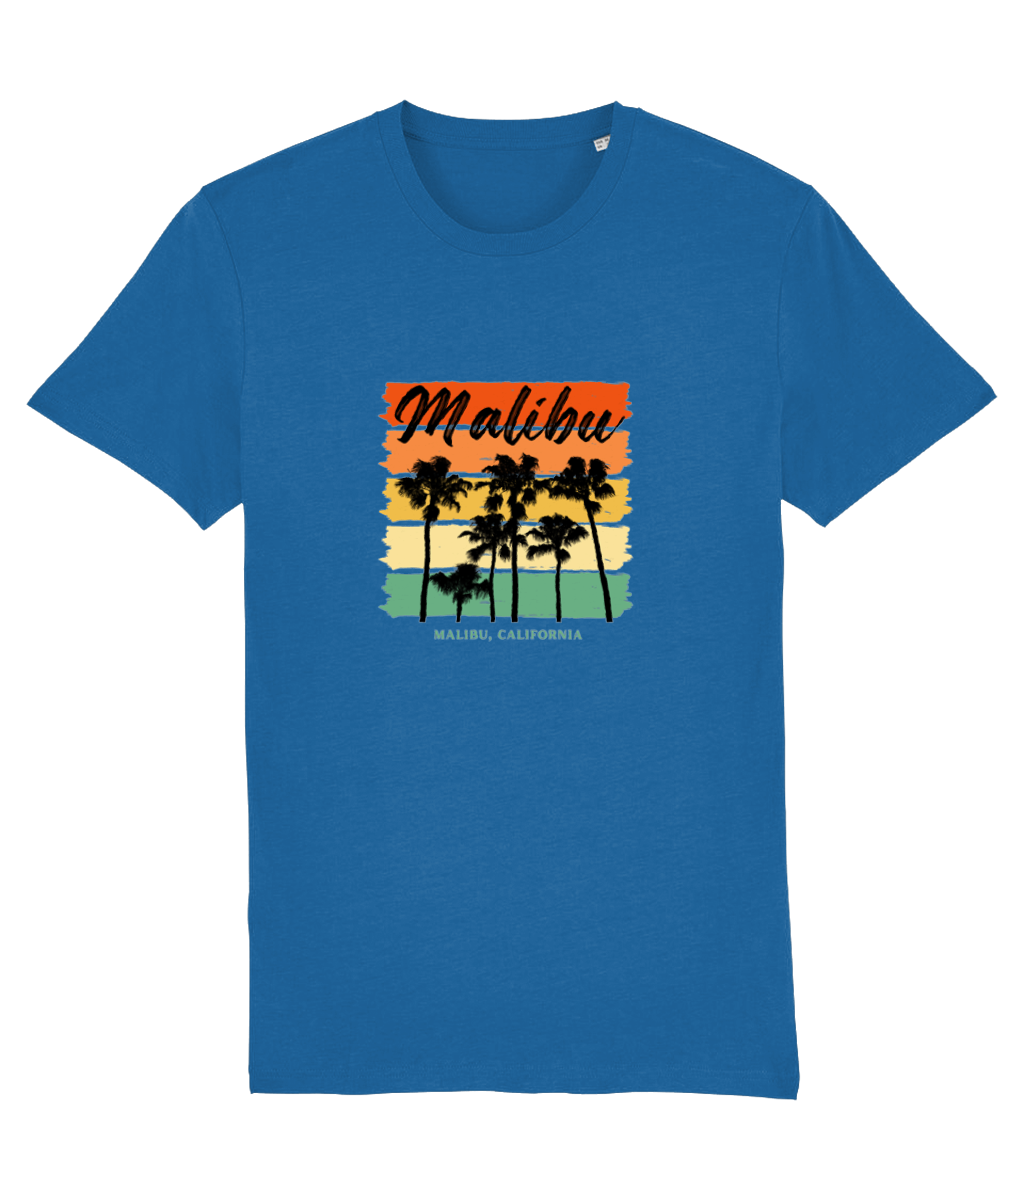 Malibu - T-shirt